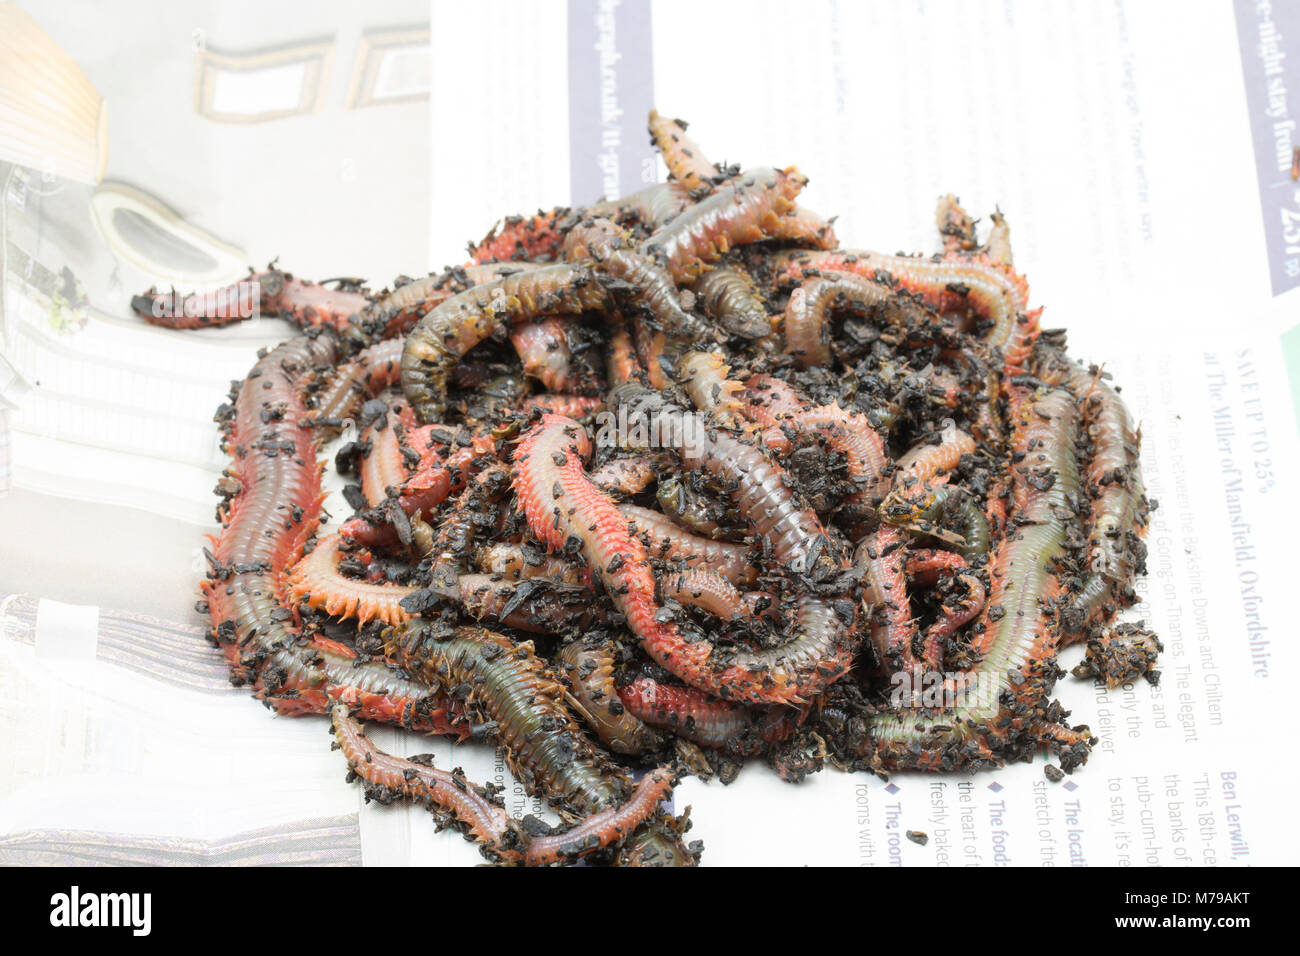 König ragworm Attila virens, Dorset UK. Der König ragworm ist ein beliebter Köder Zum Angeln im Meer. Die Würmer haben starke Zange und kann über einen Fuß lang wachsen Stockfoto